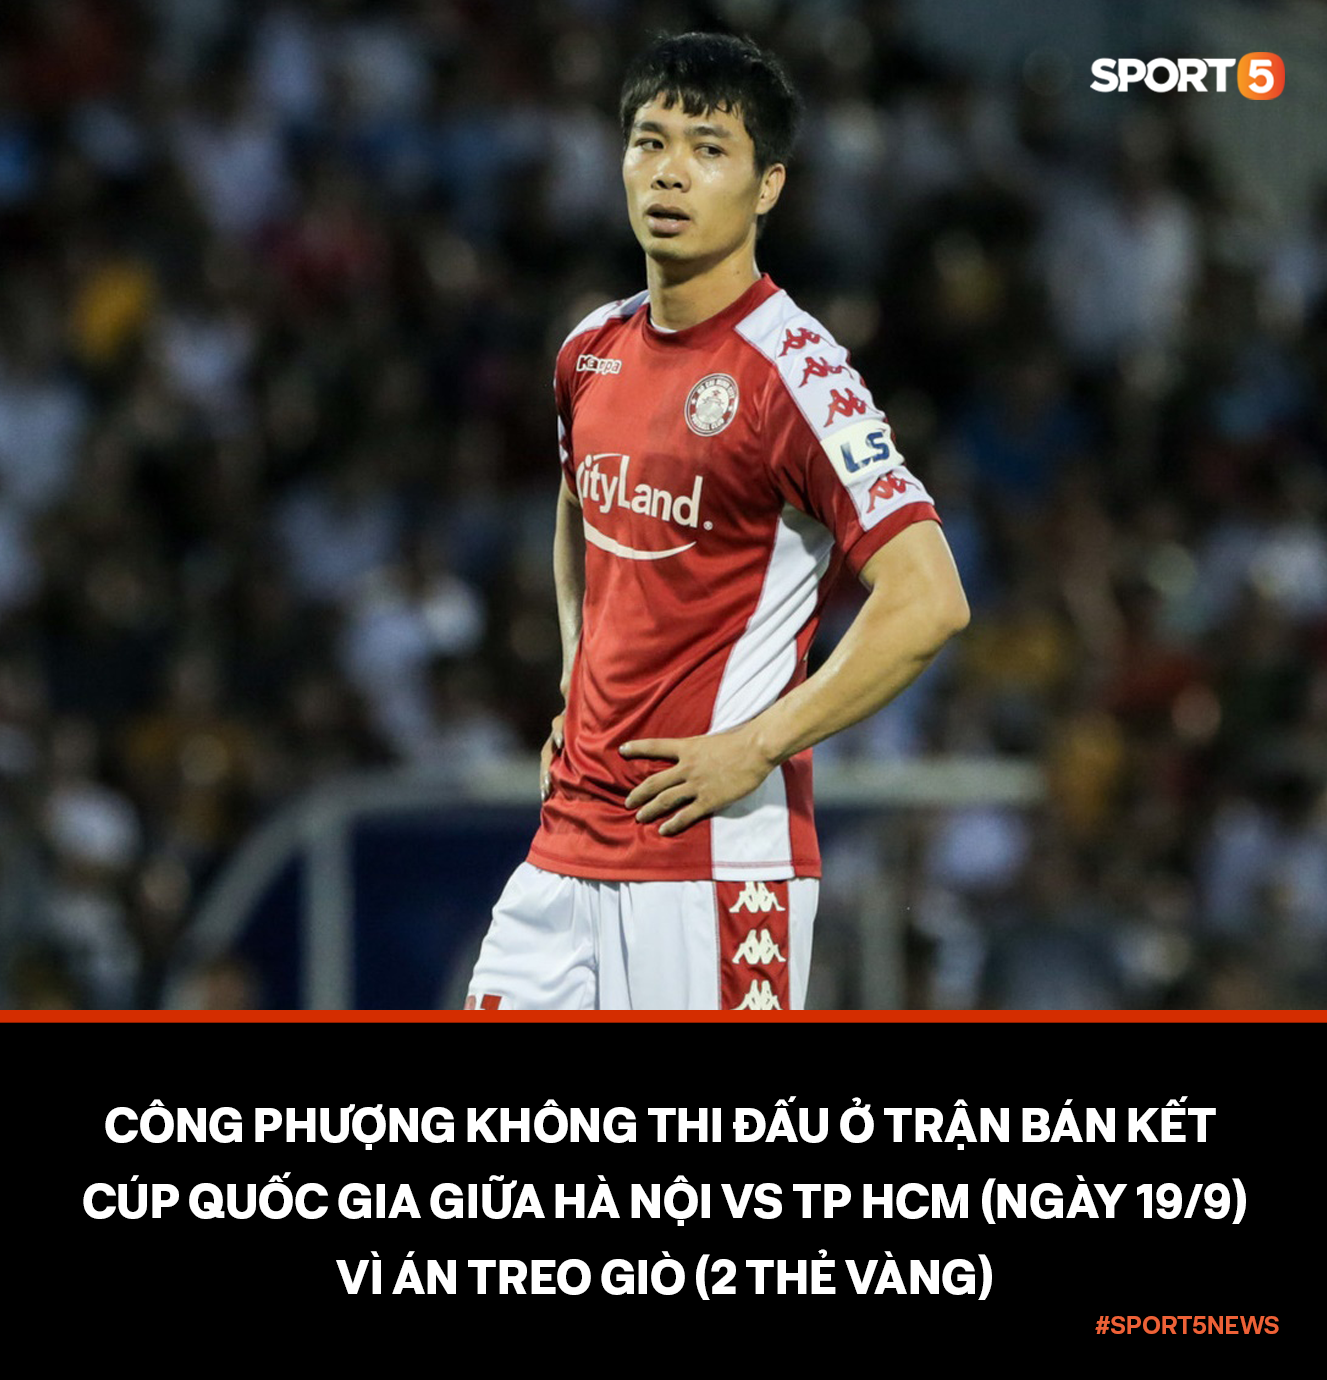 Công Phượng bị treo giò, fan vỡ mộng khi không được chứng kiến hai cầu thủ tấn công hay nhất Việt Nam đối đầu - Ảnh 1.